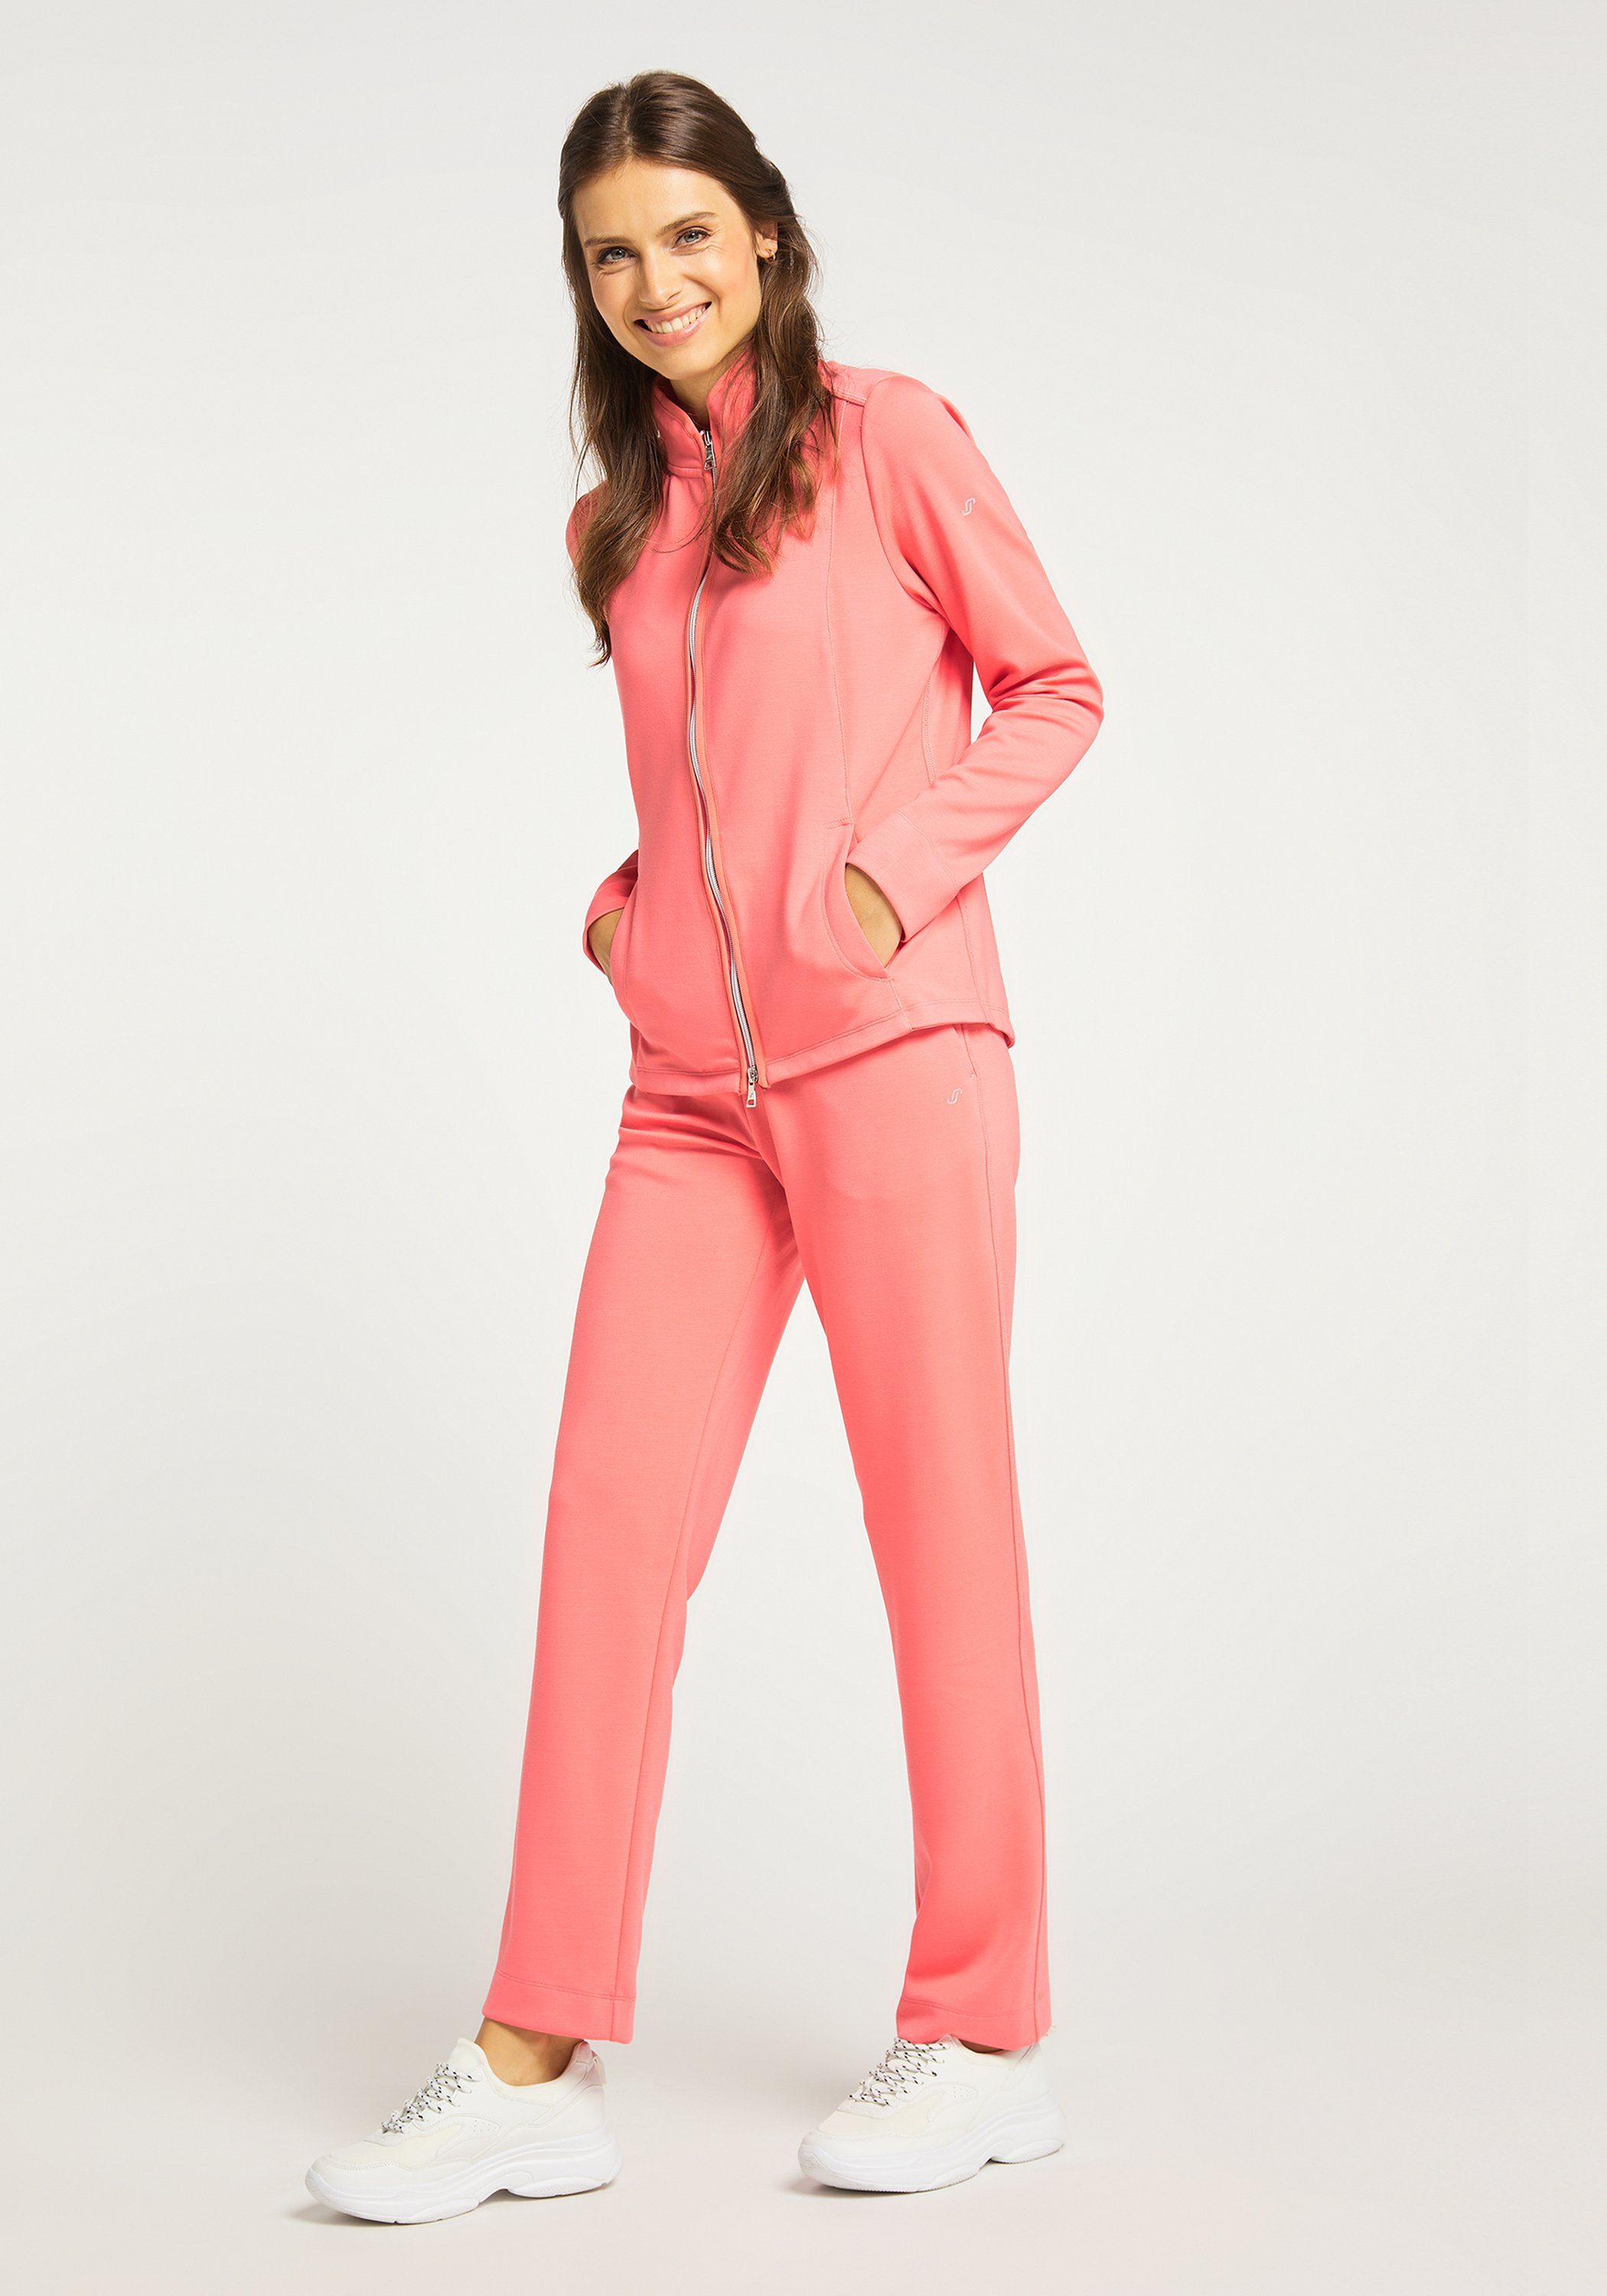 Sportswear MALA coral Jacke pink Trainingsjacke Joy